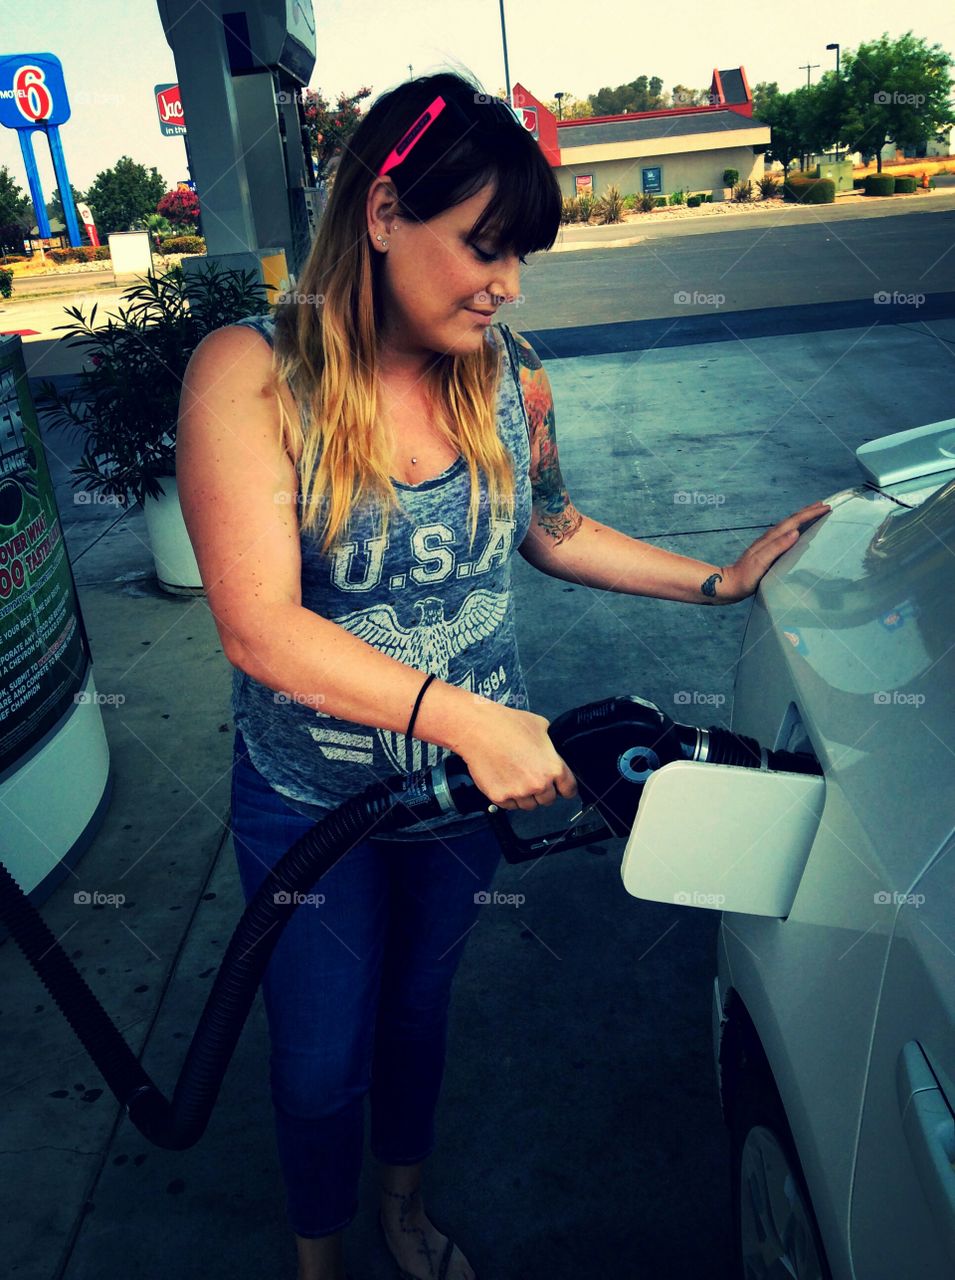 Pumping Petrol